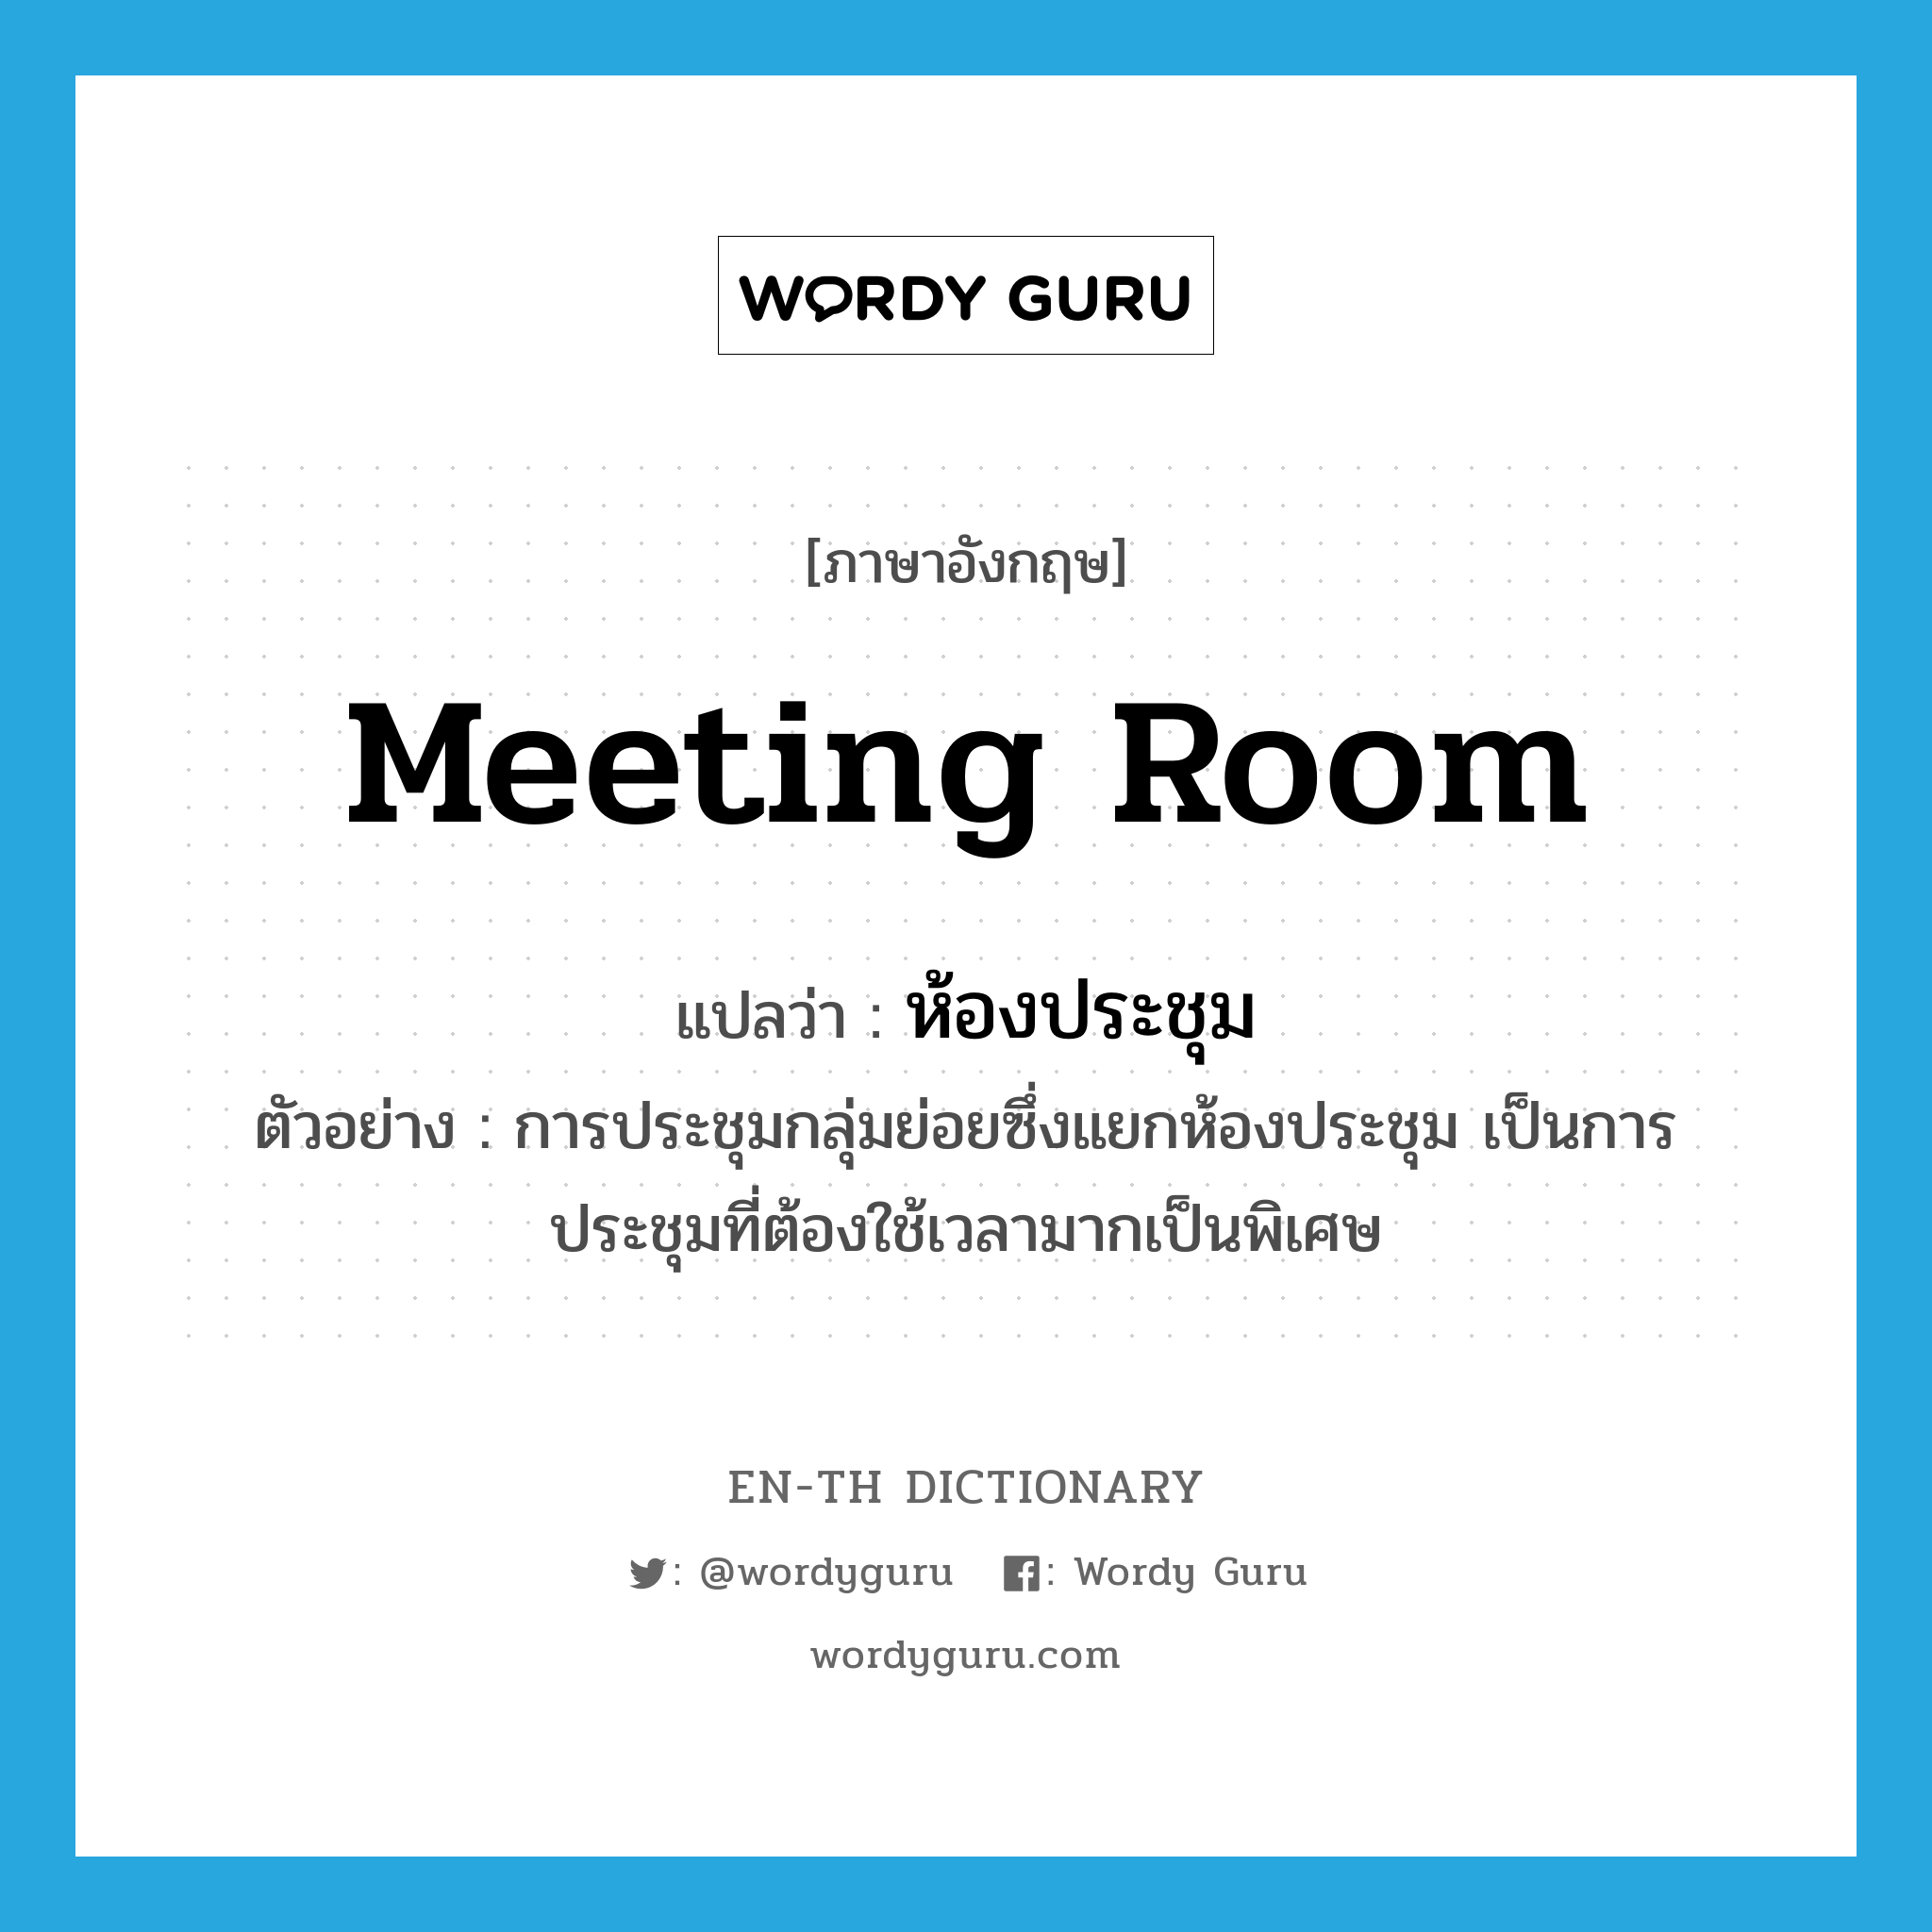 meeting room แปลว่า?, คำศัพท์ภาษาอังกฤษ meeting room แปลว่า ห้องประชุม ประเภท N ตัวอย่าง การประชุมกลุ่มย่อยซึ่งแยกห้องประชุม เป็นการประชุมที่ต้องใช้เวลามากเป็นพิเศษ หมวด N